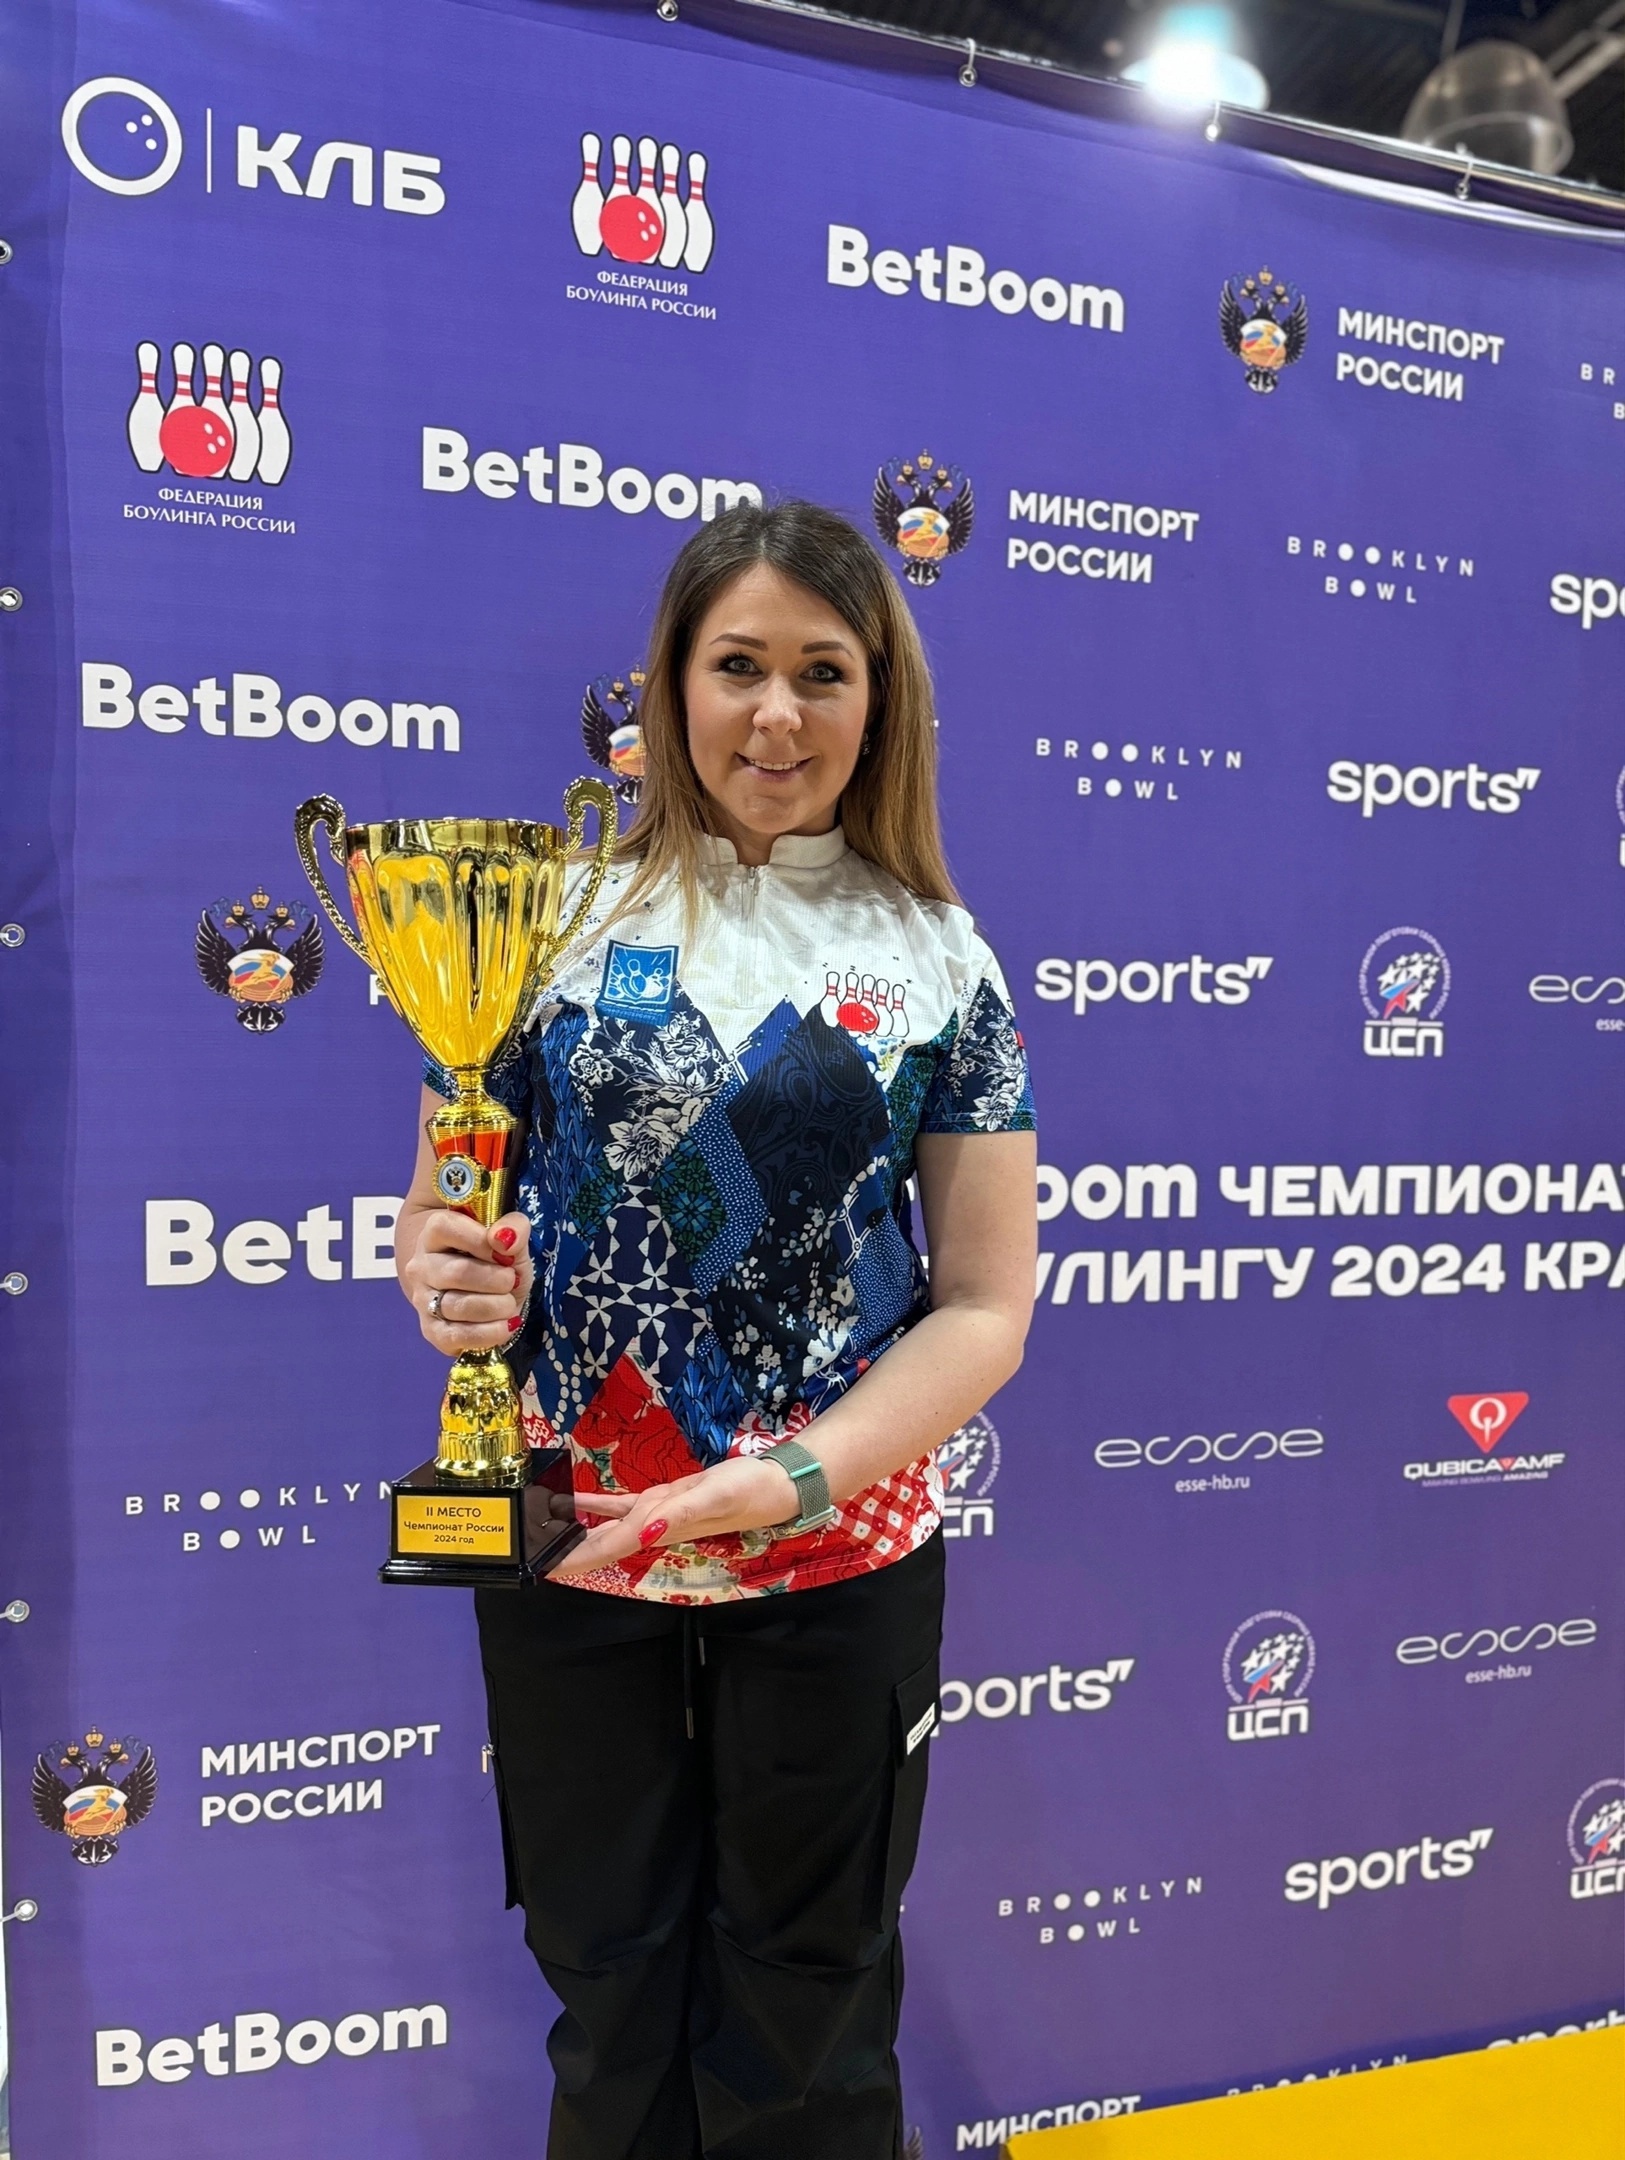 Юлия Краянова завоевала бронзовую медаль на чемпионате России по боулингу